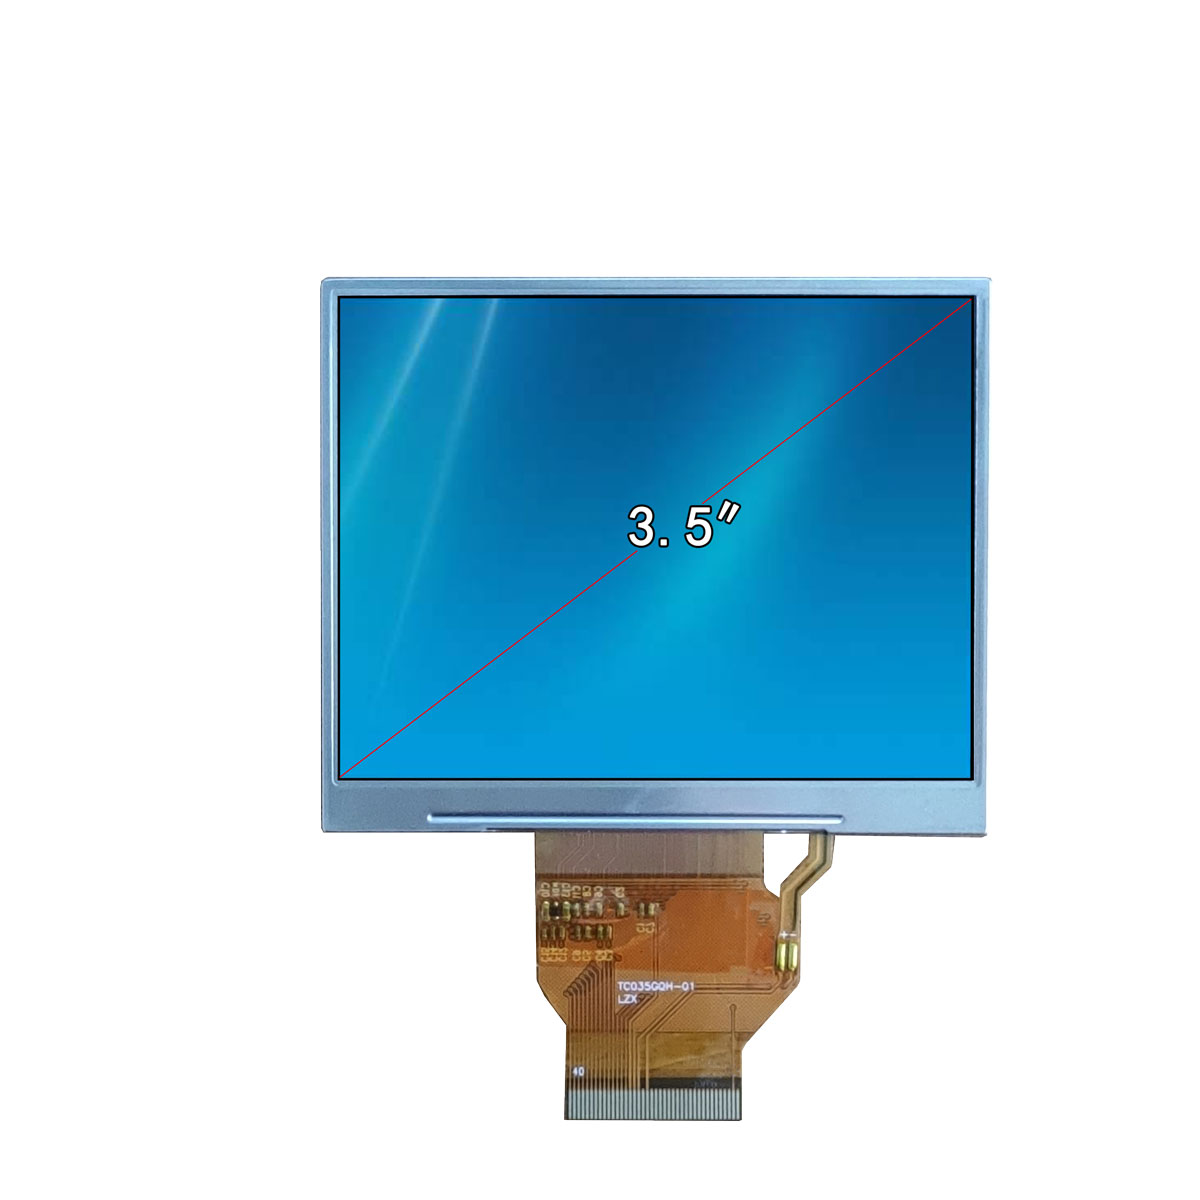 四川绵阳成都与TV和PC液晶屏相比，LCD液晶屏拥有更高的亮度